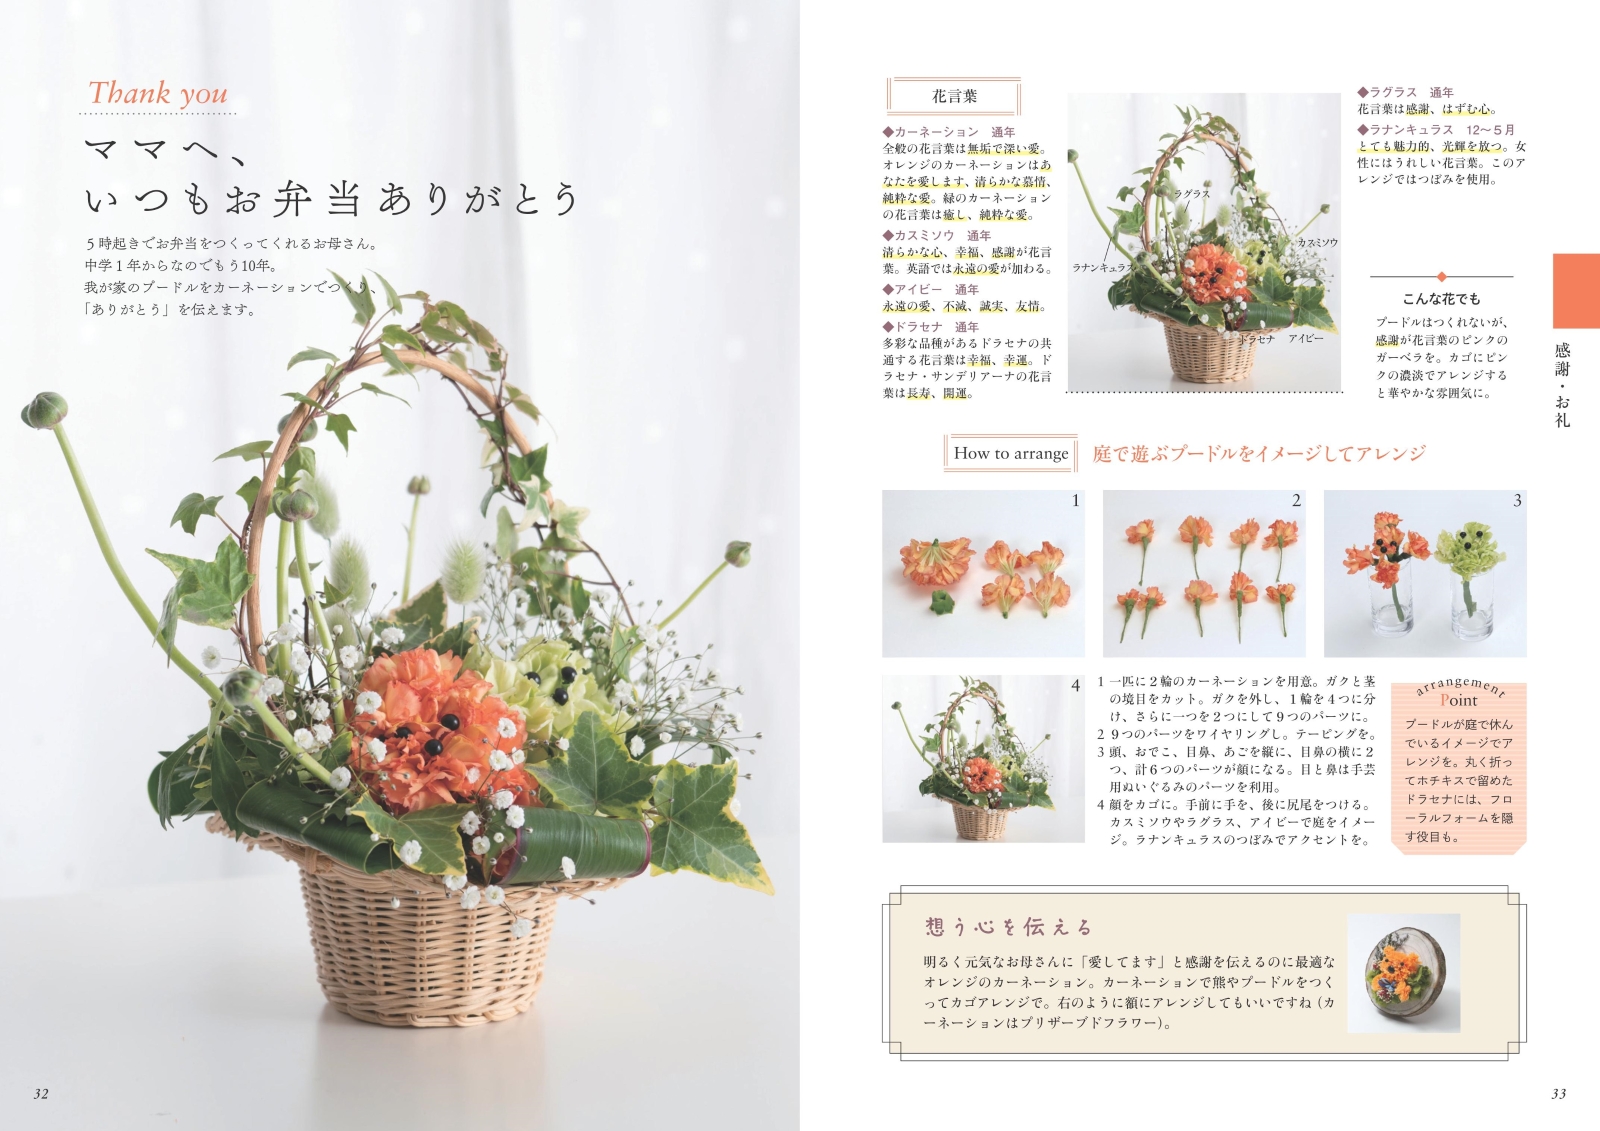 楽天ブックス 花言葉で編む 基本のフラワーアレンジ メッセージを託した花々をセンスよくまとめる 長井 睦美 本